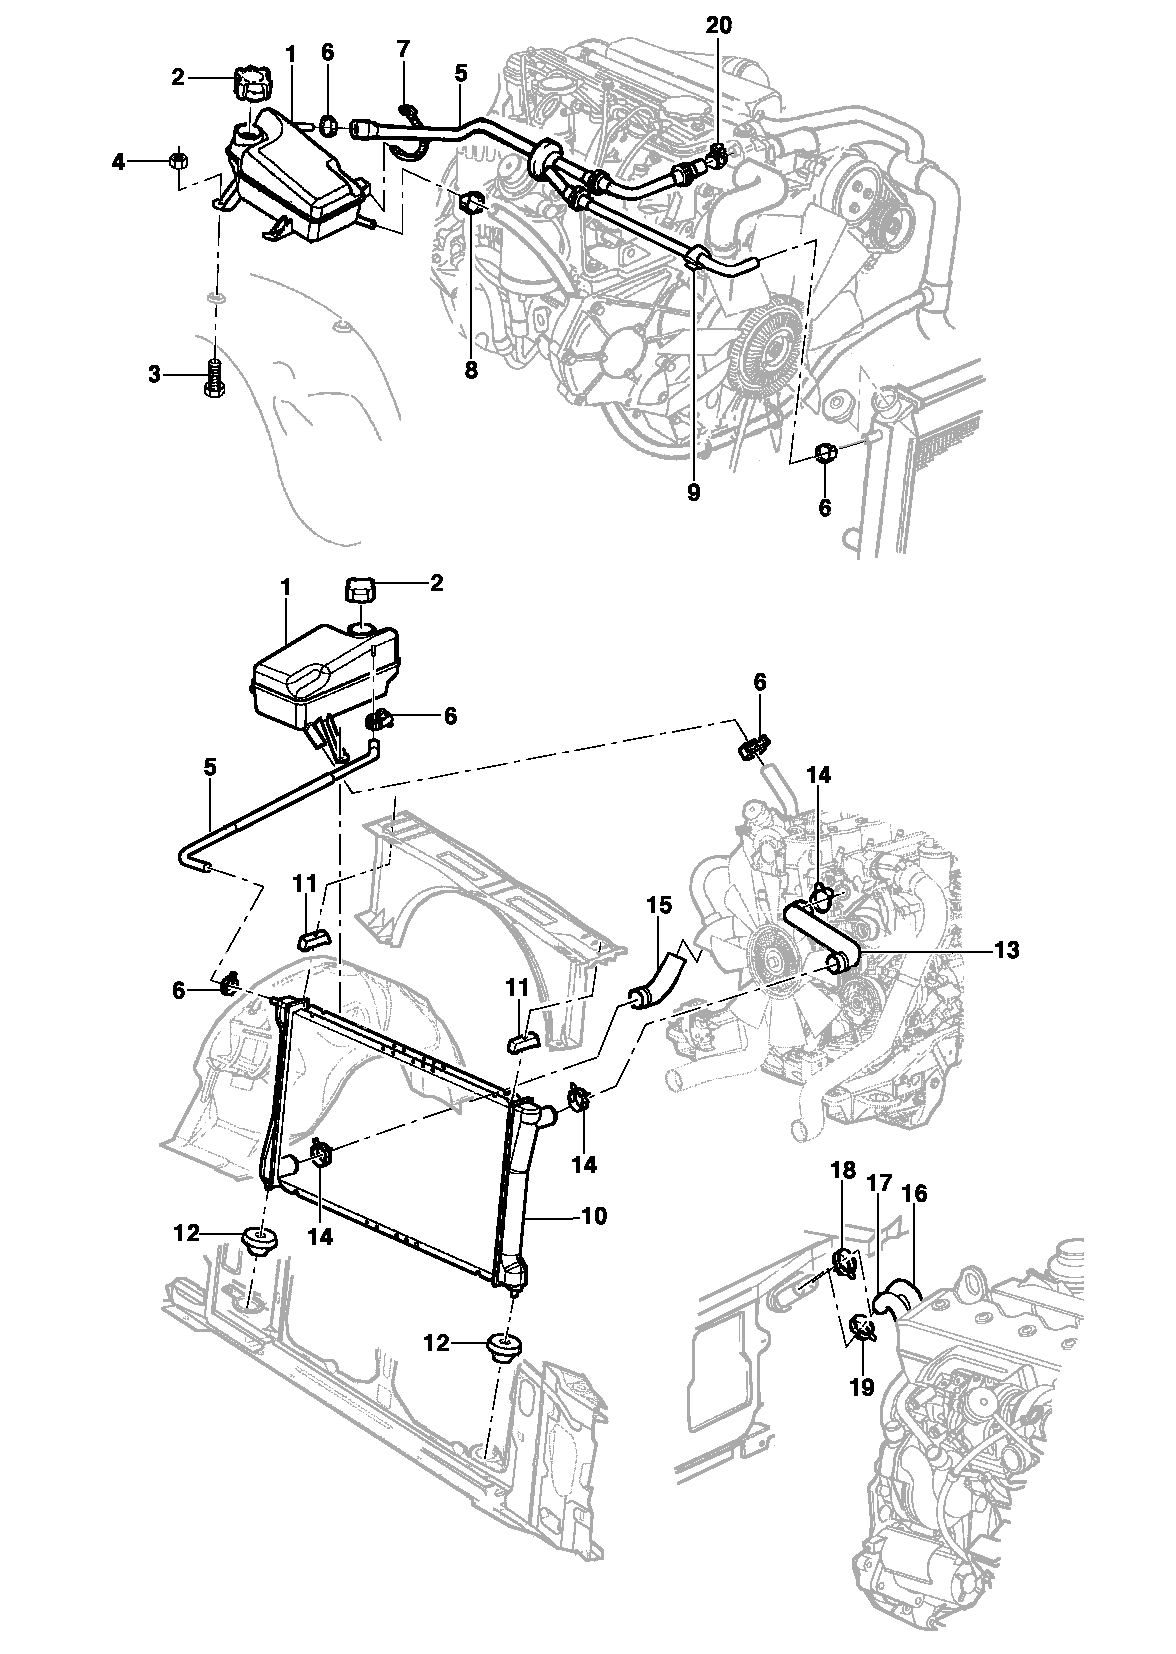 Радиатор, шланги радиатора и расширительный бачок - Двигатель LK6